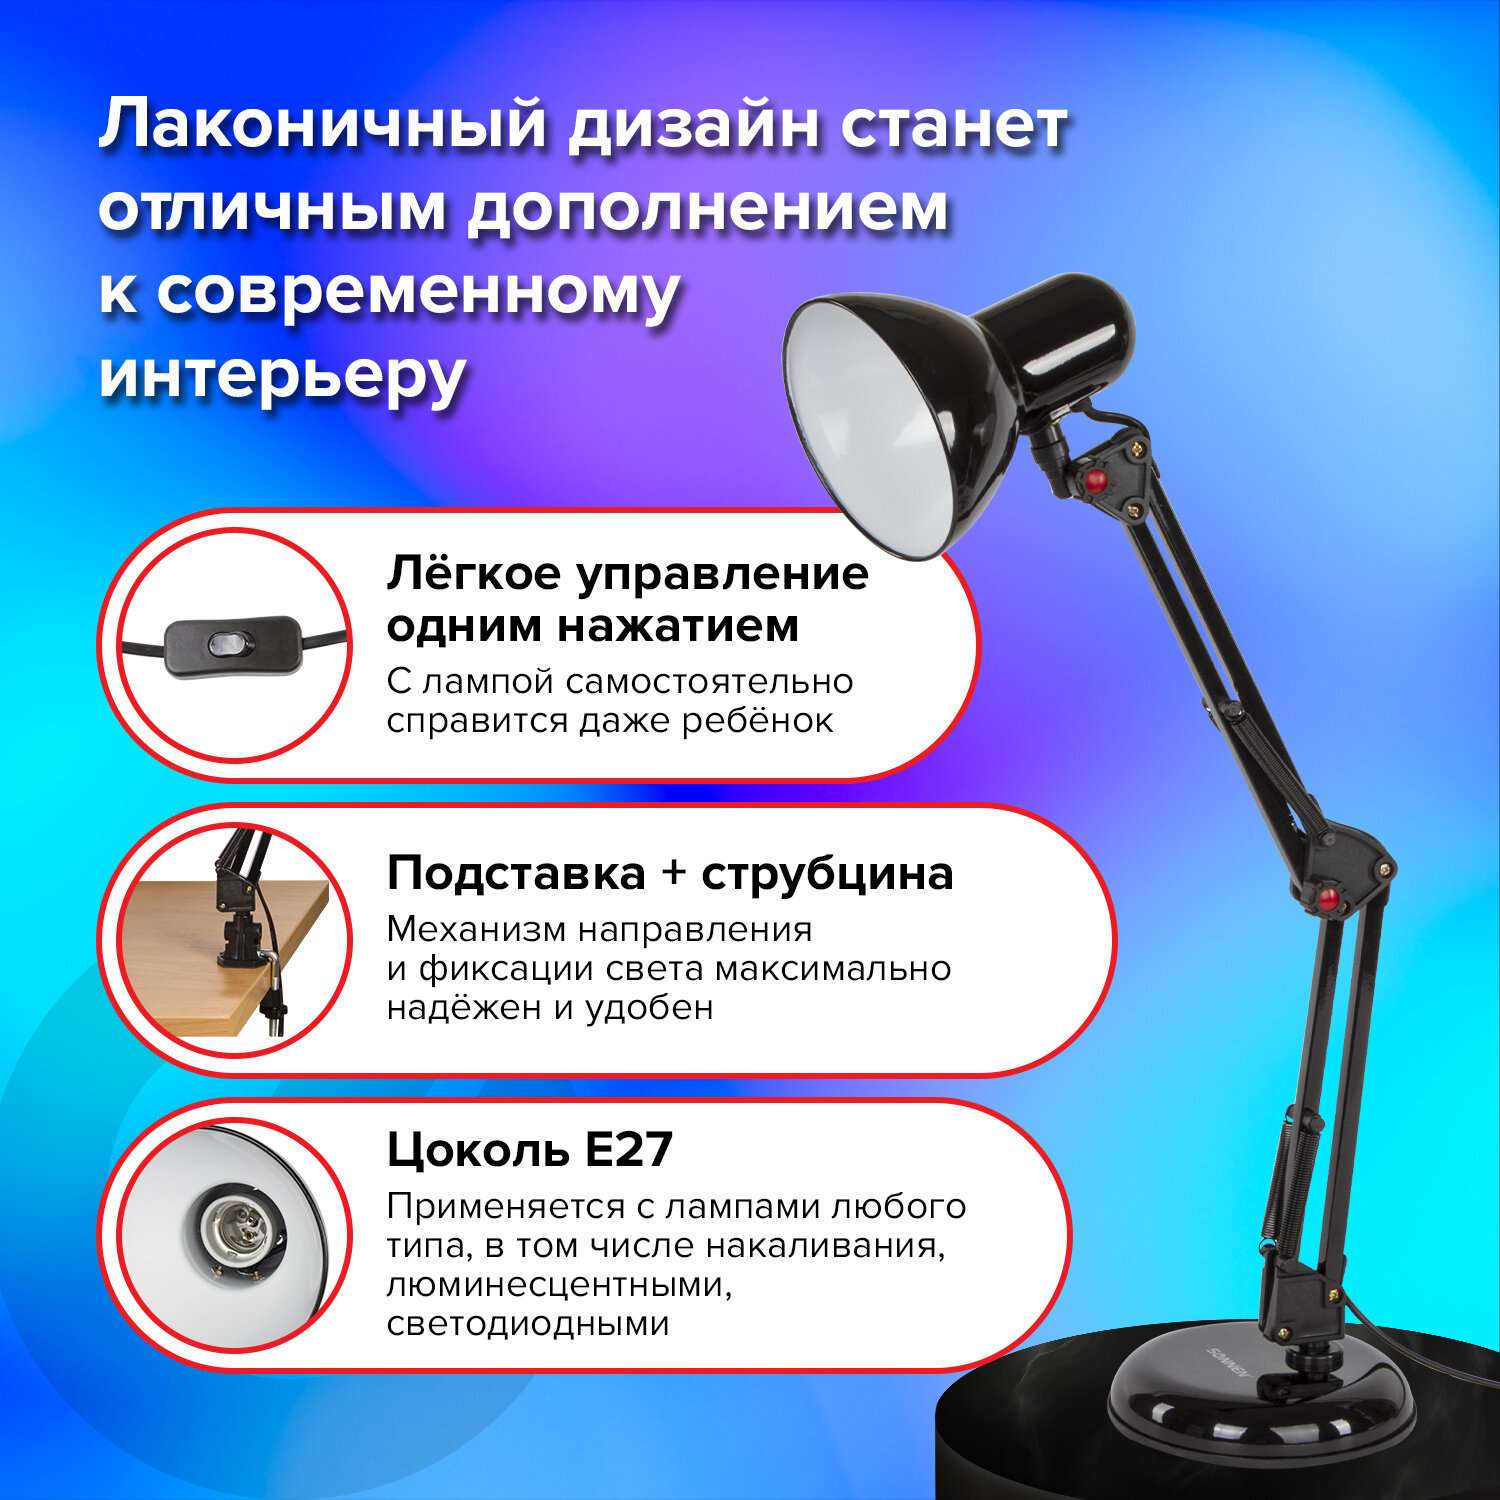 Лампа настольная Sonnen светильник для рабочего стола светодиодный подставка струбцина - фото 2